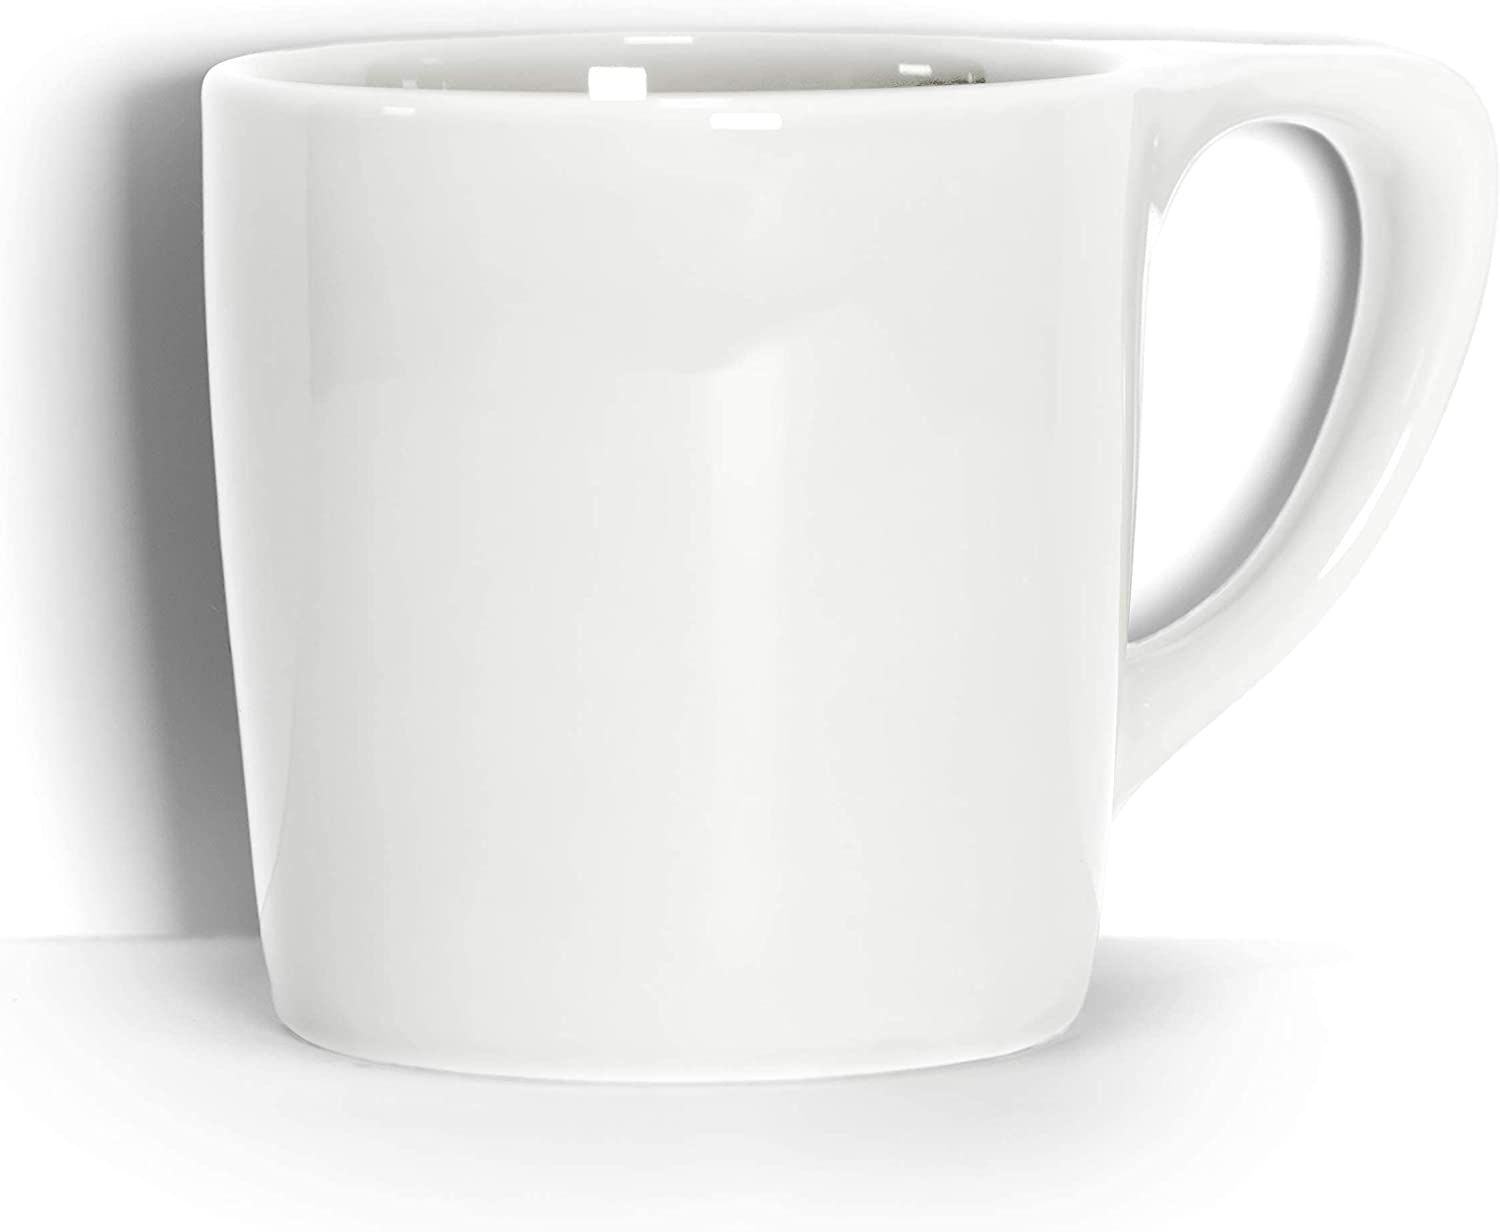 平底咖啡杯:有平底把手的白瓷咖啡杯